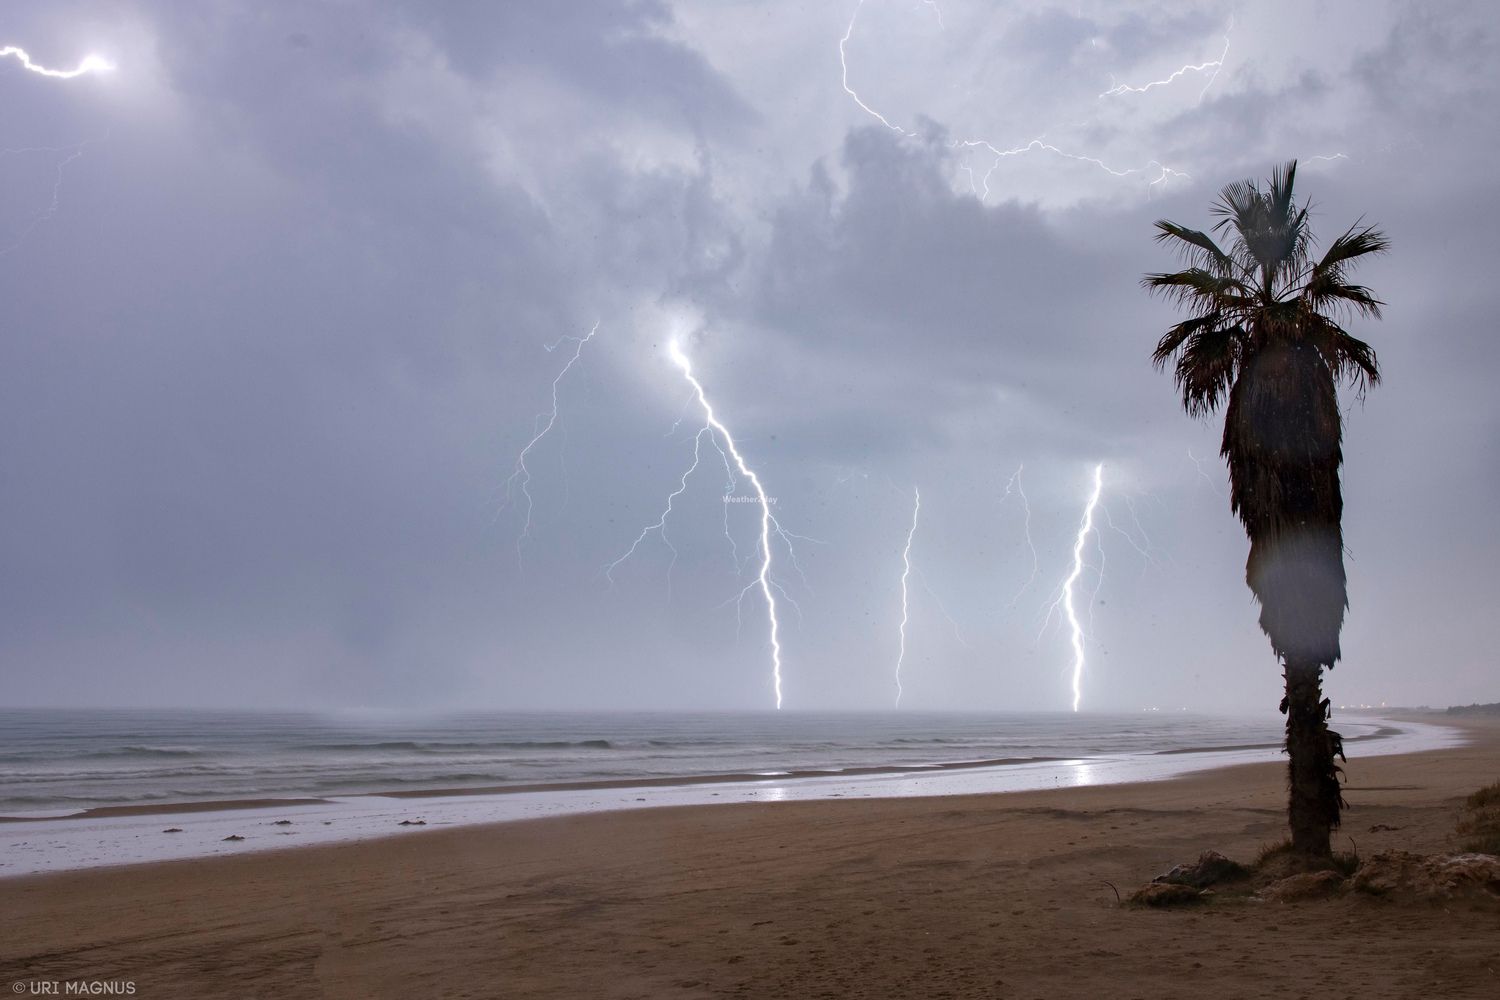 ברקים בחוף מעגן מיכאל. צילום: אורי מגנוס